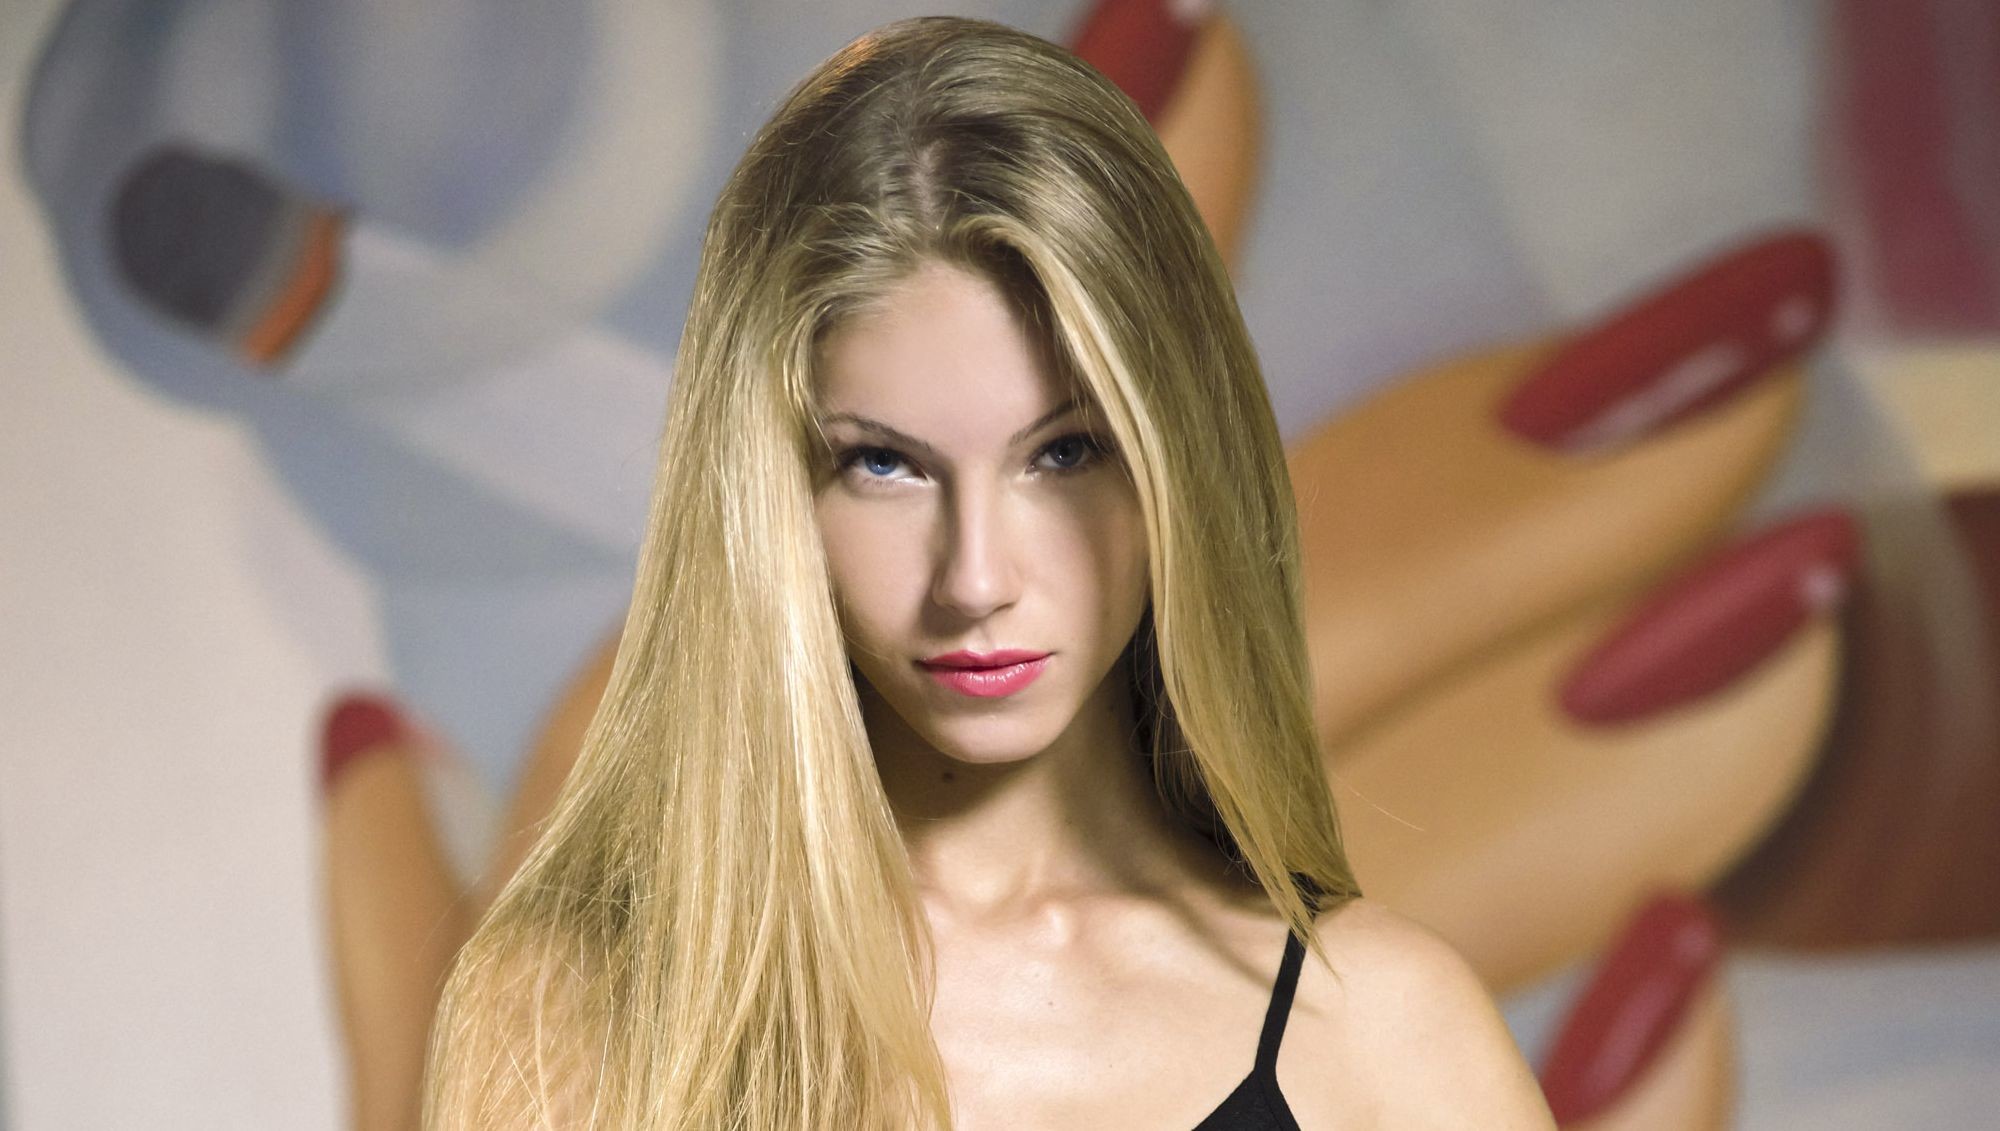 Смотреть онлайн Русская модель Abby седлает большой пенис партнера бесплатно